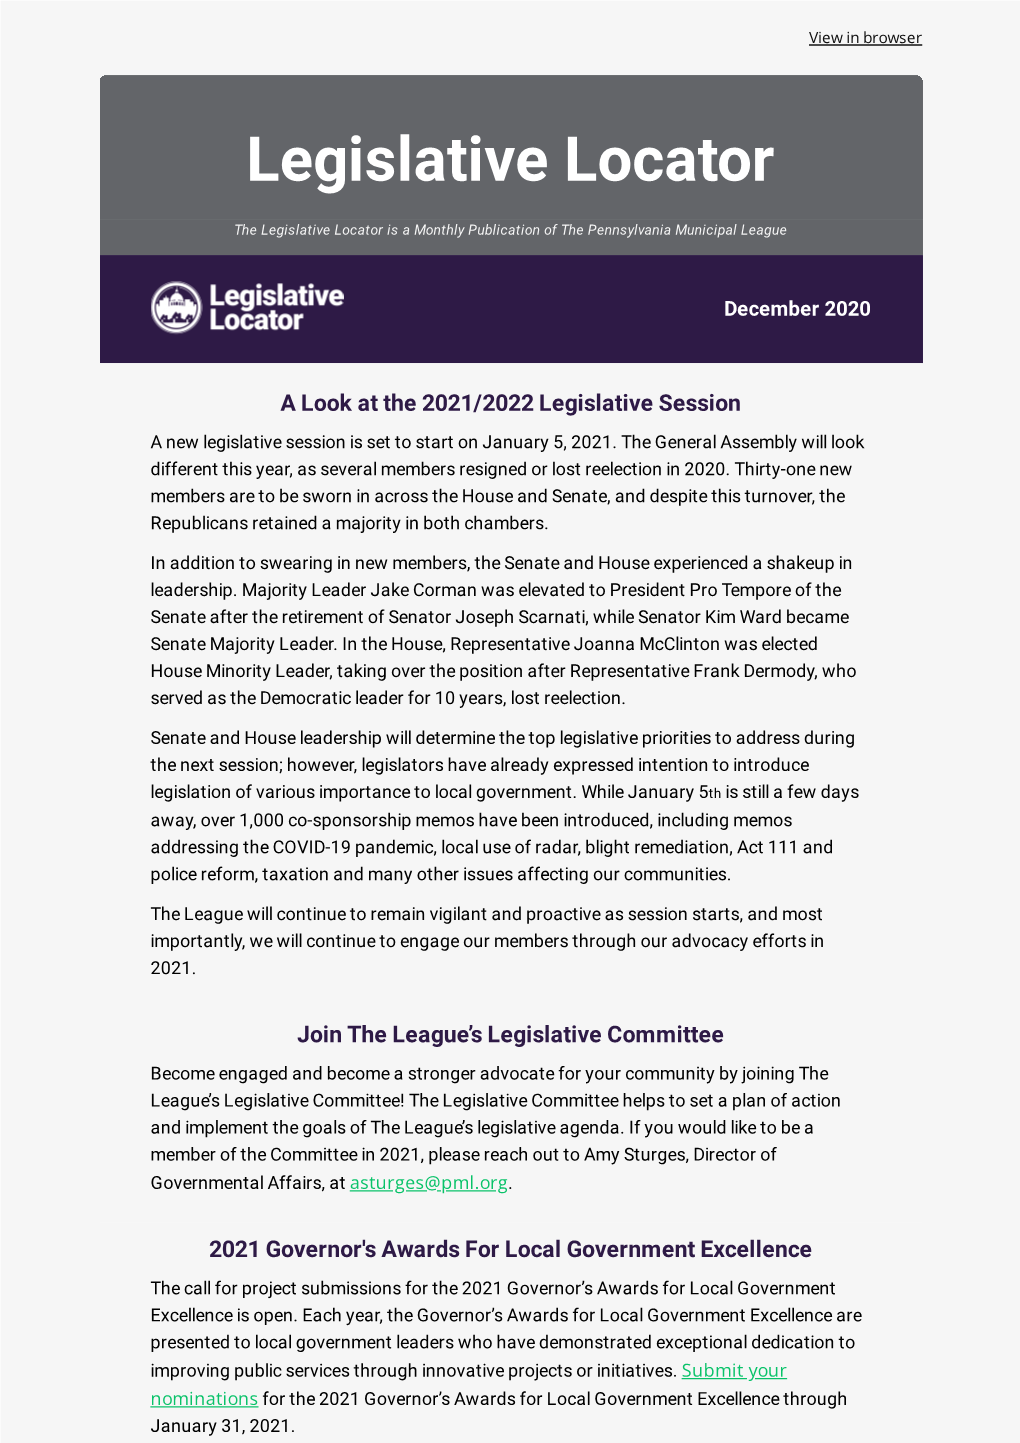 Legislative Locator